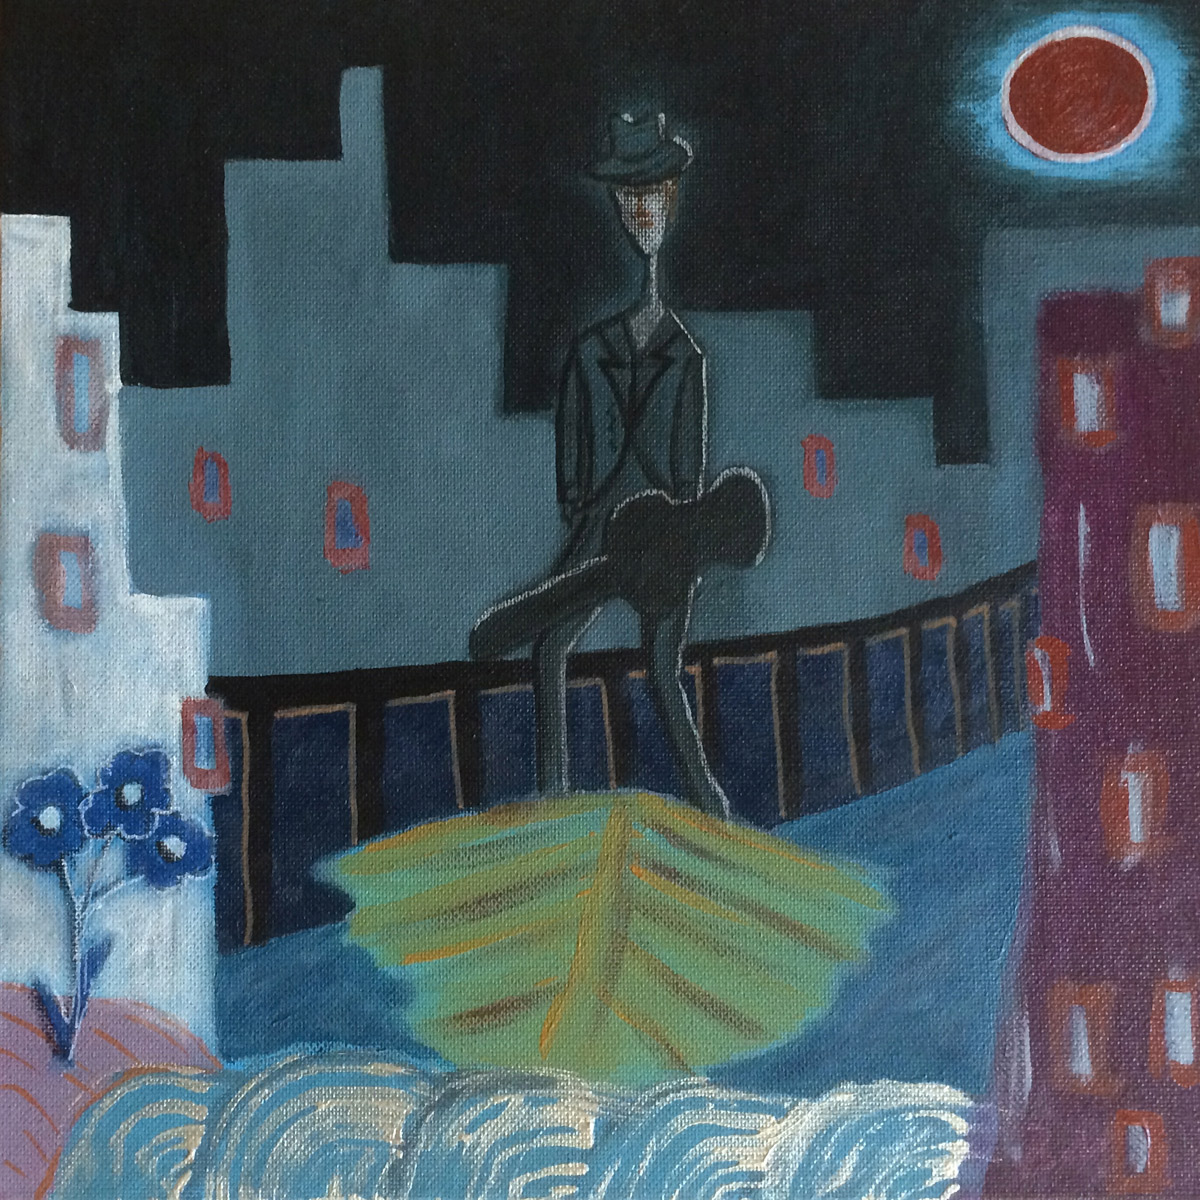 Bluesman in a Boat, by Brenton Manser.